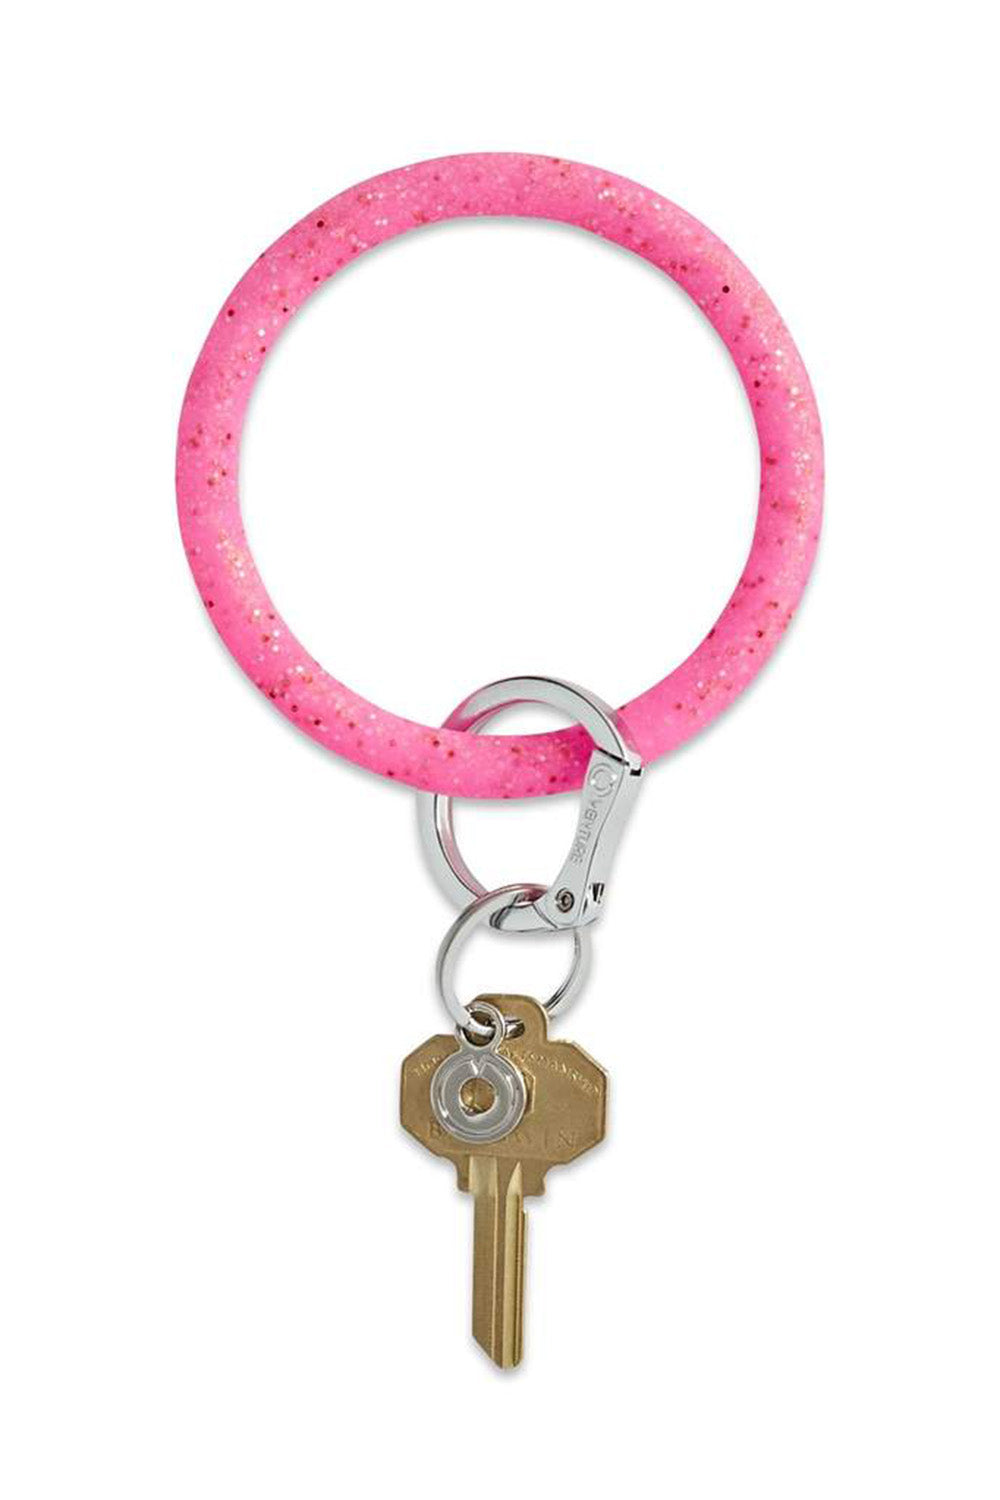 Silicone Big O Key Ring - Confetti Tickled Pink